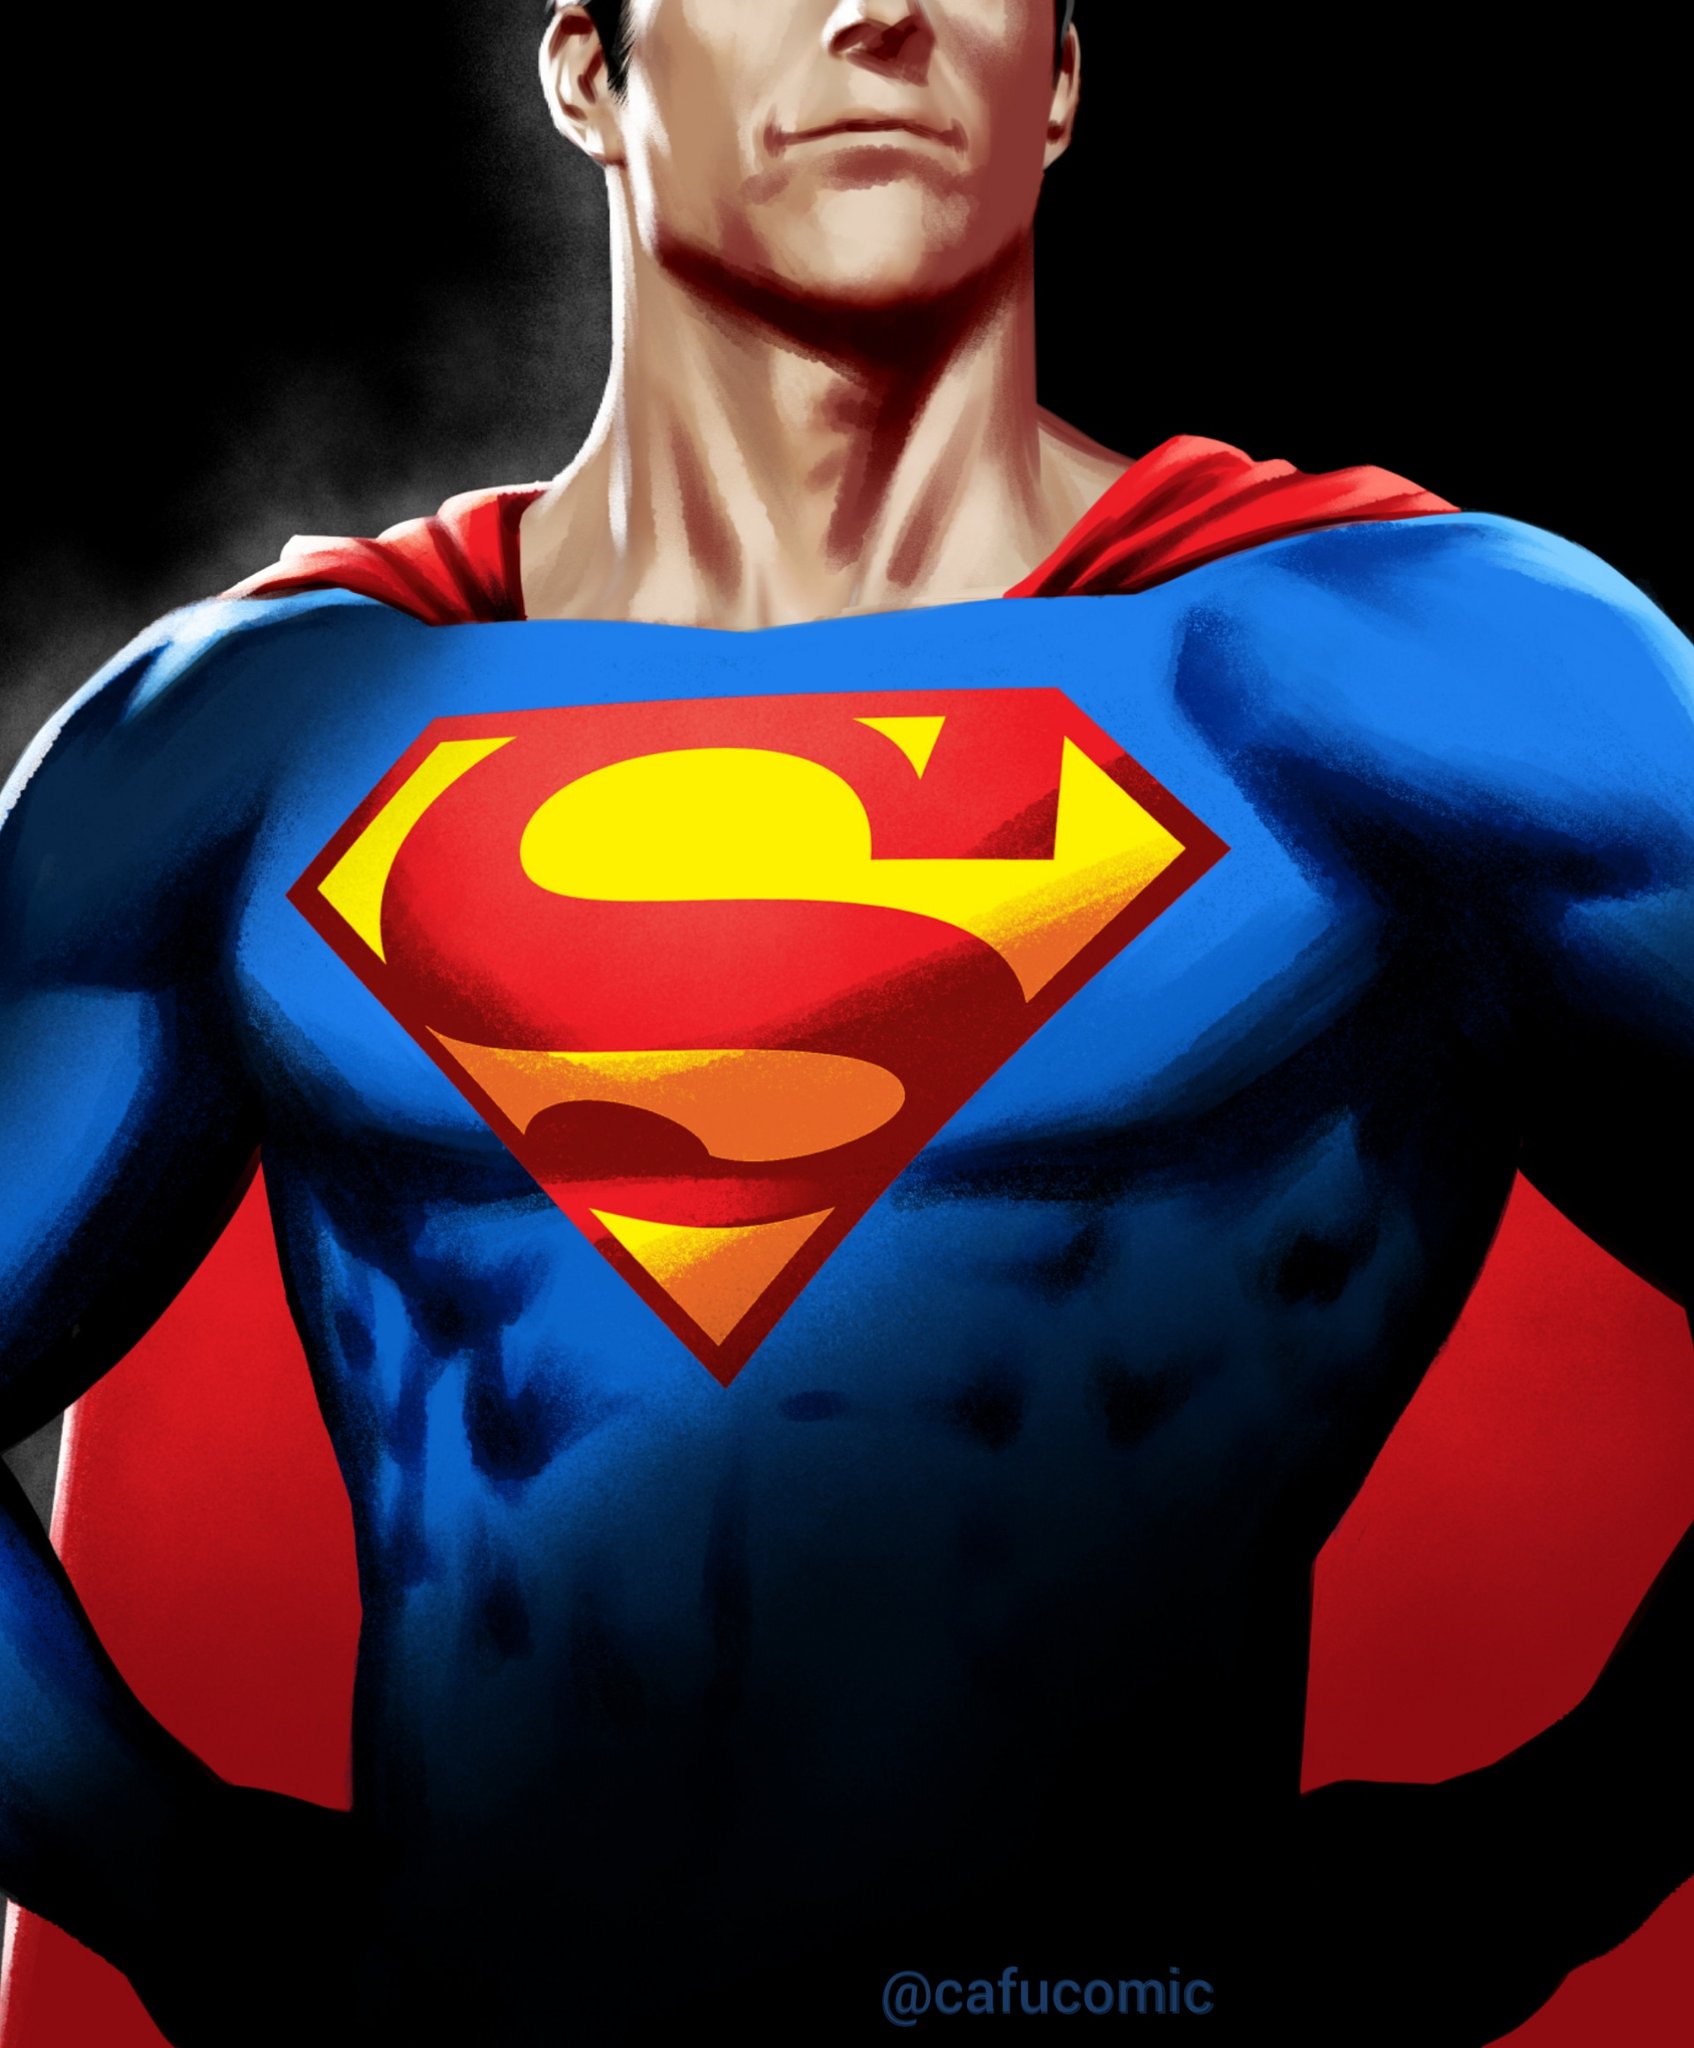 mjx4ld-Superman_by_CAFU__1694x2048_-dk84huue16r61.jpg